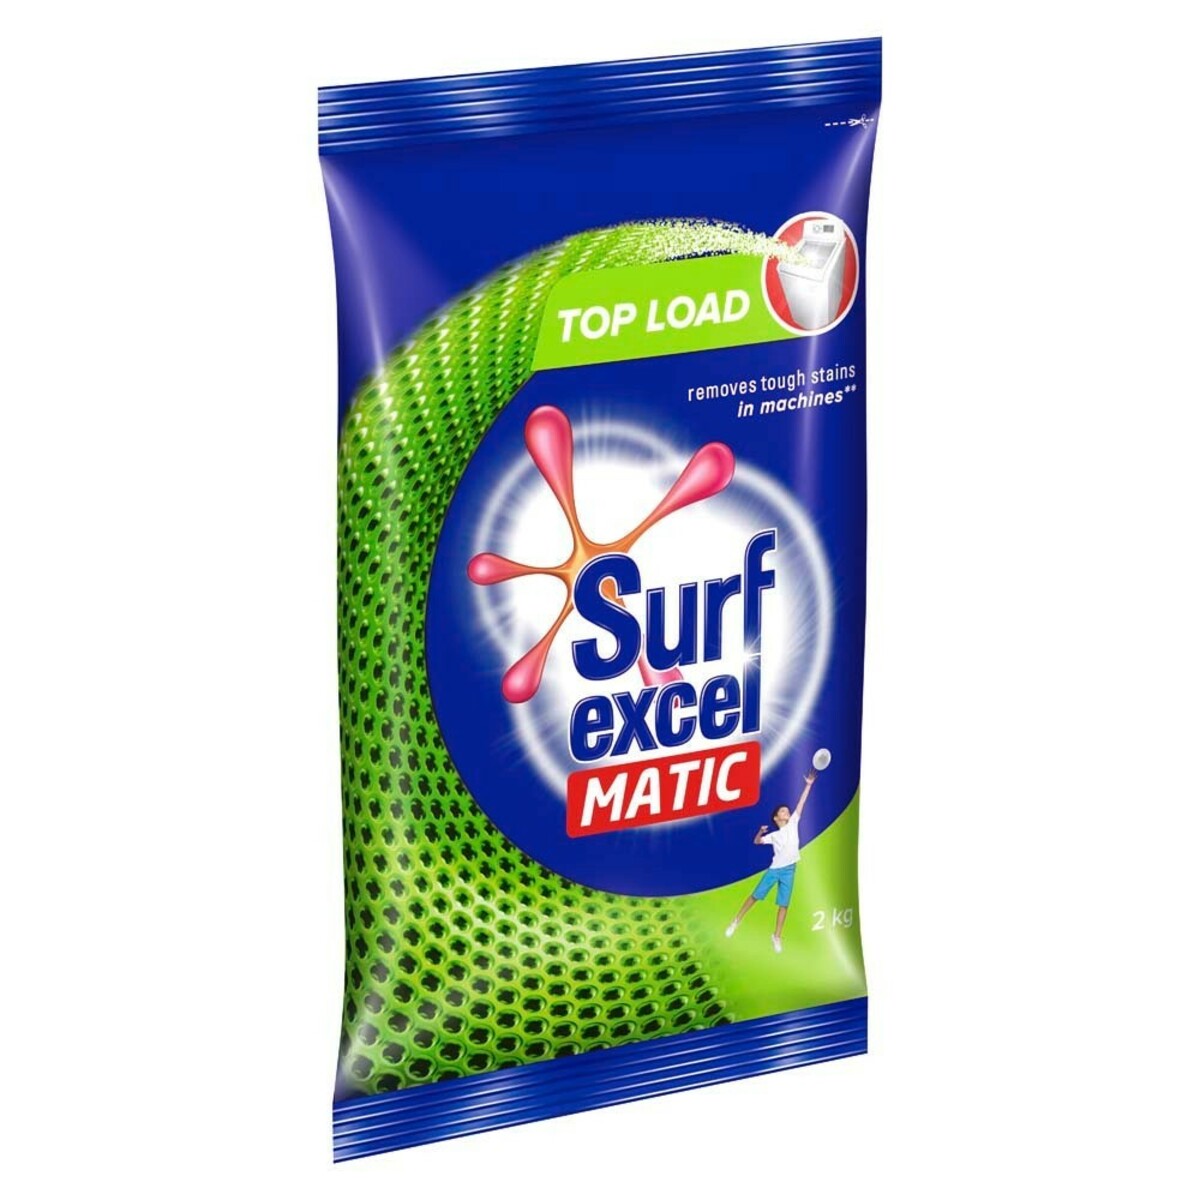 Surf Excel Matic Top Load 2Kg